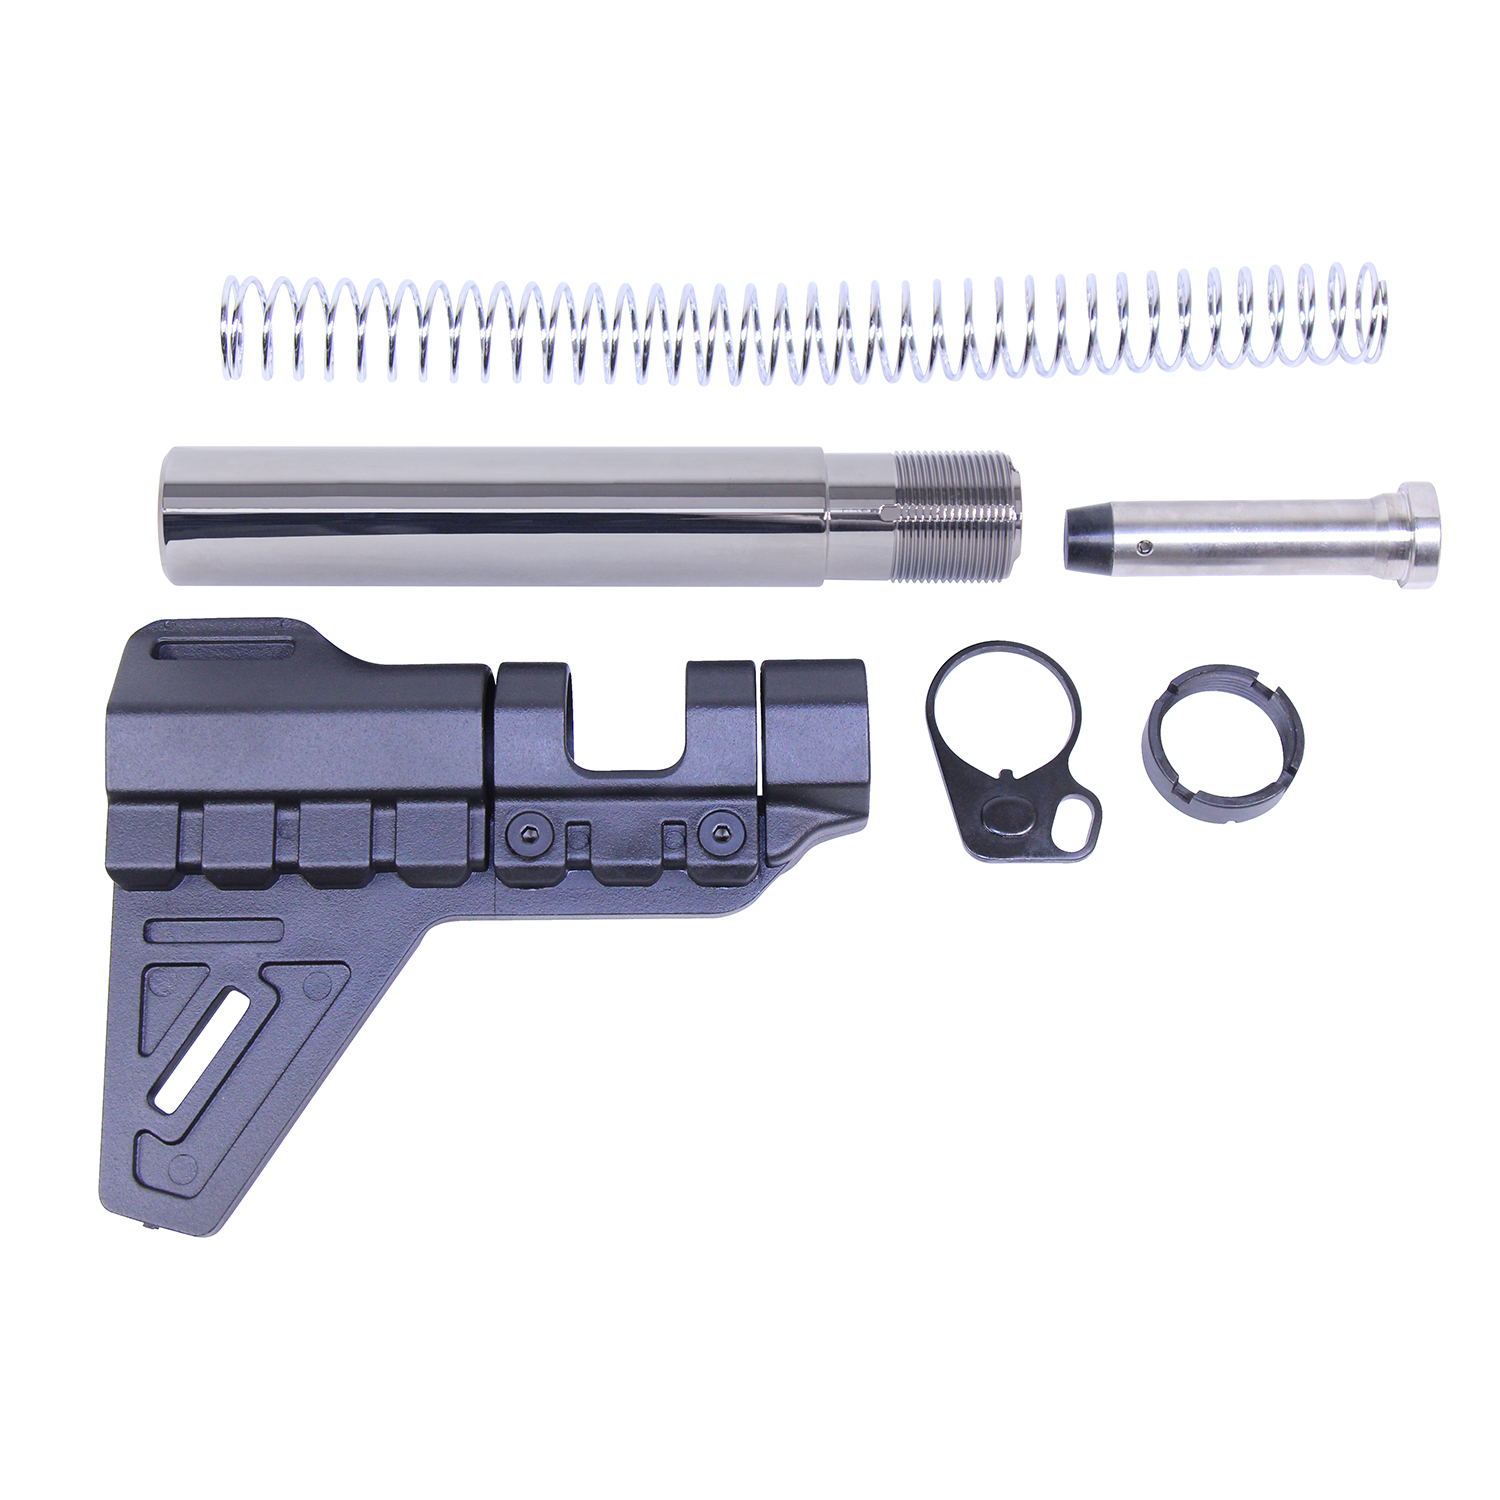 Black Chrome AR-15 Micro Breach Pistol Brace Kit by Guntec USA.